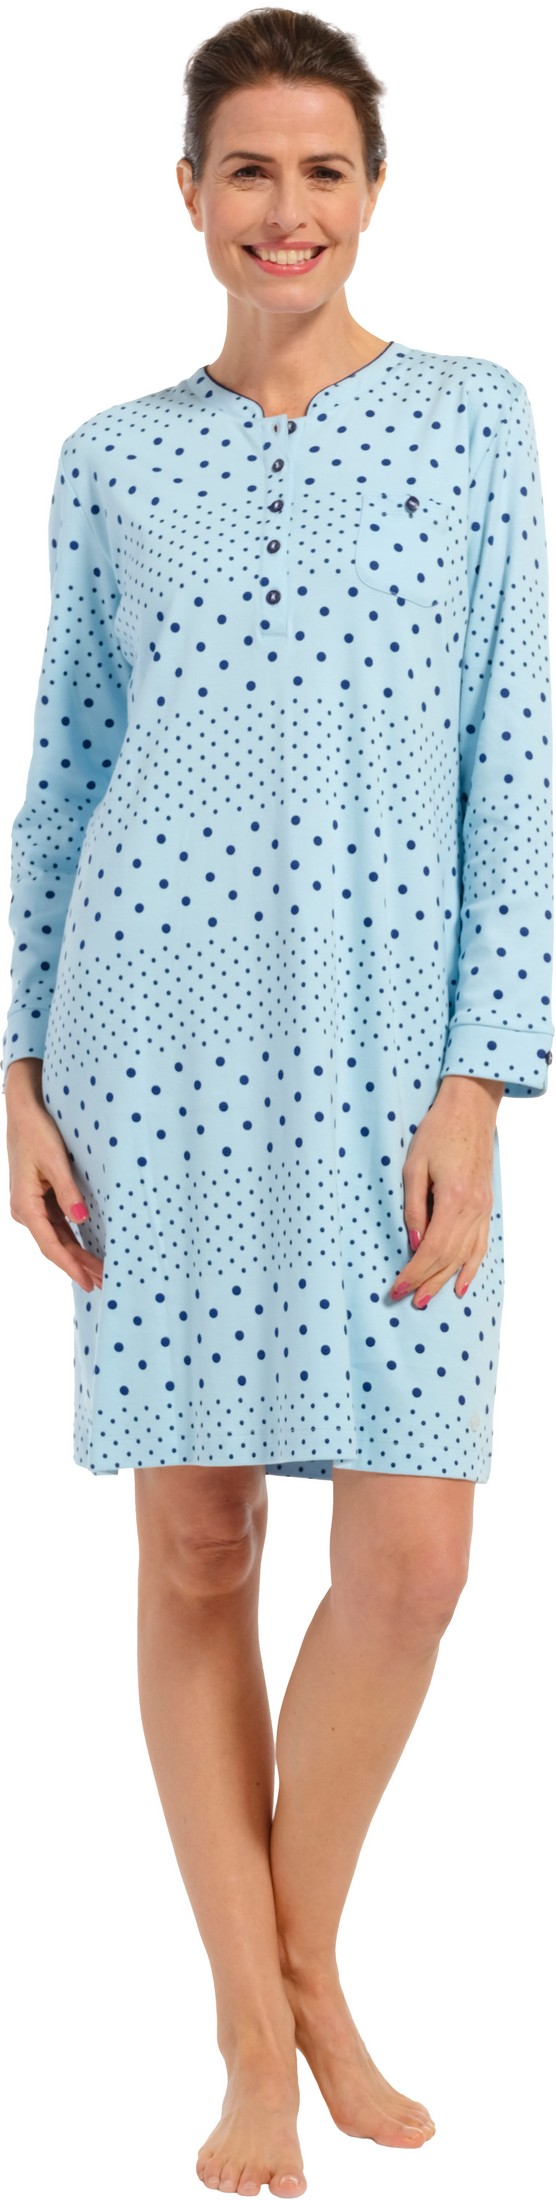 Pastunette dames nachthemd 10232-162-4 - Blauw - 52